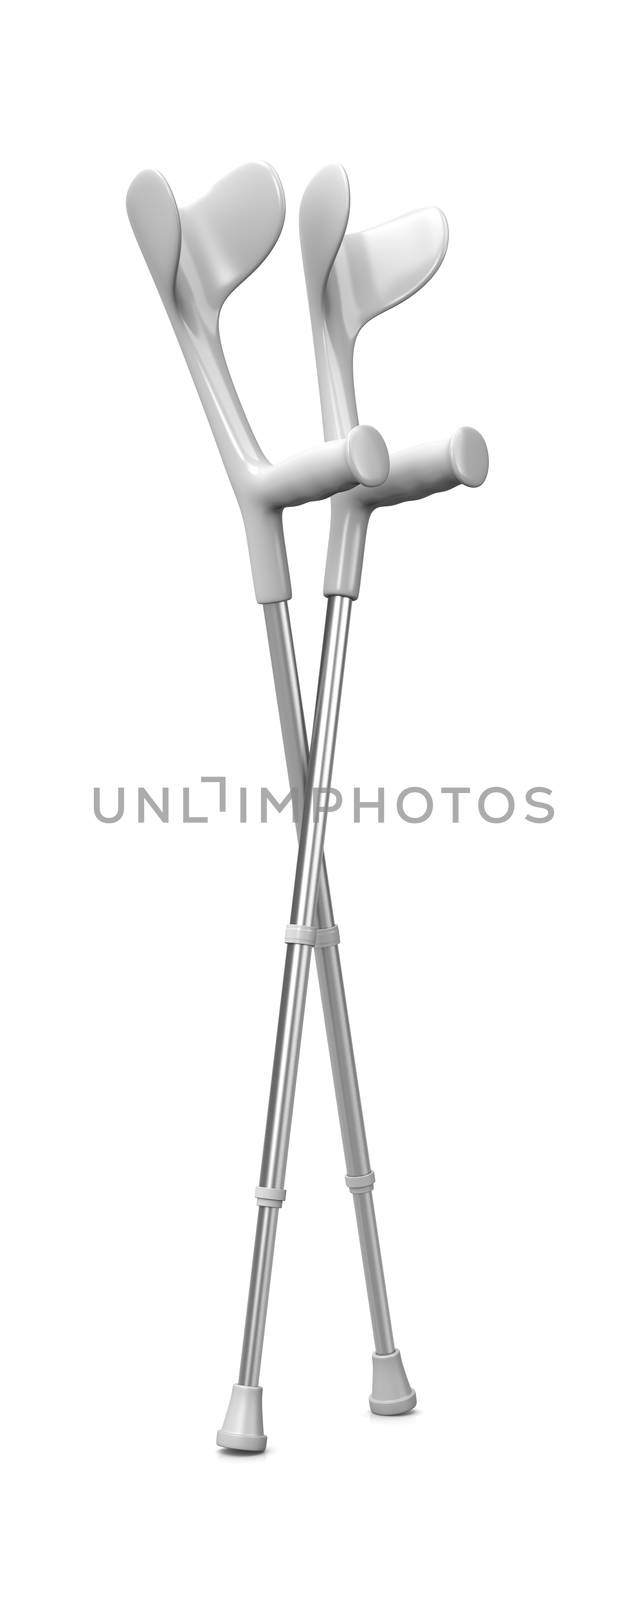 Crutches on White 3D Illustration